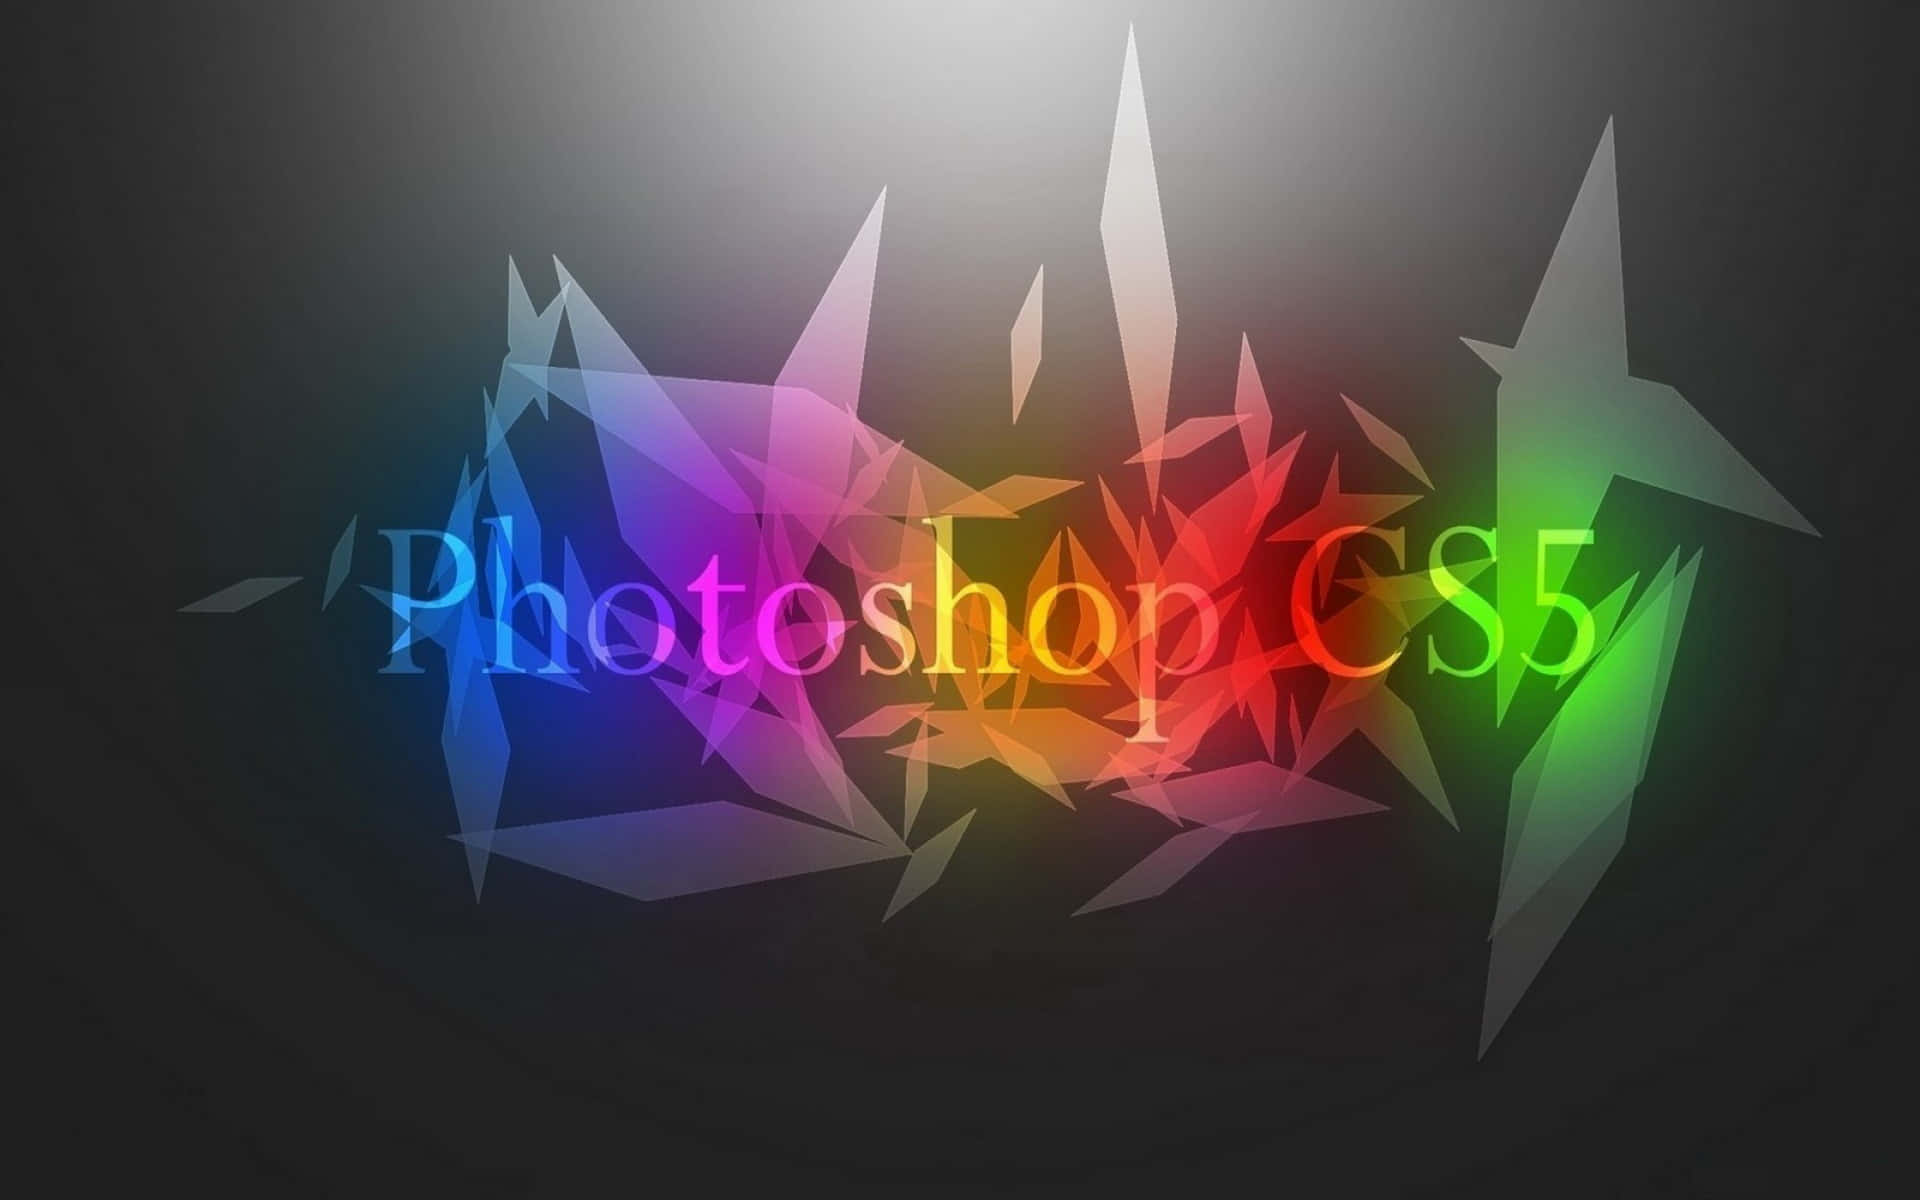 Fondocolorido De Adobe Photoshop Cs5